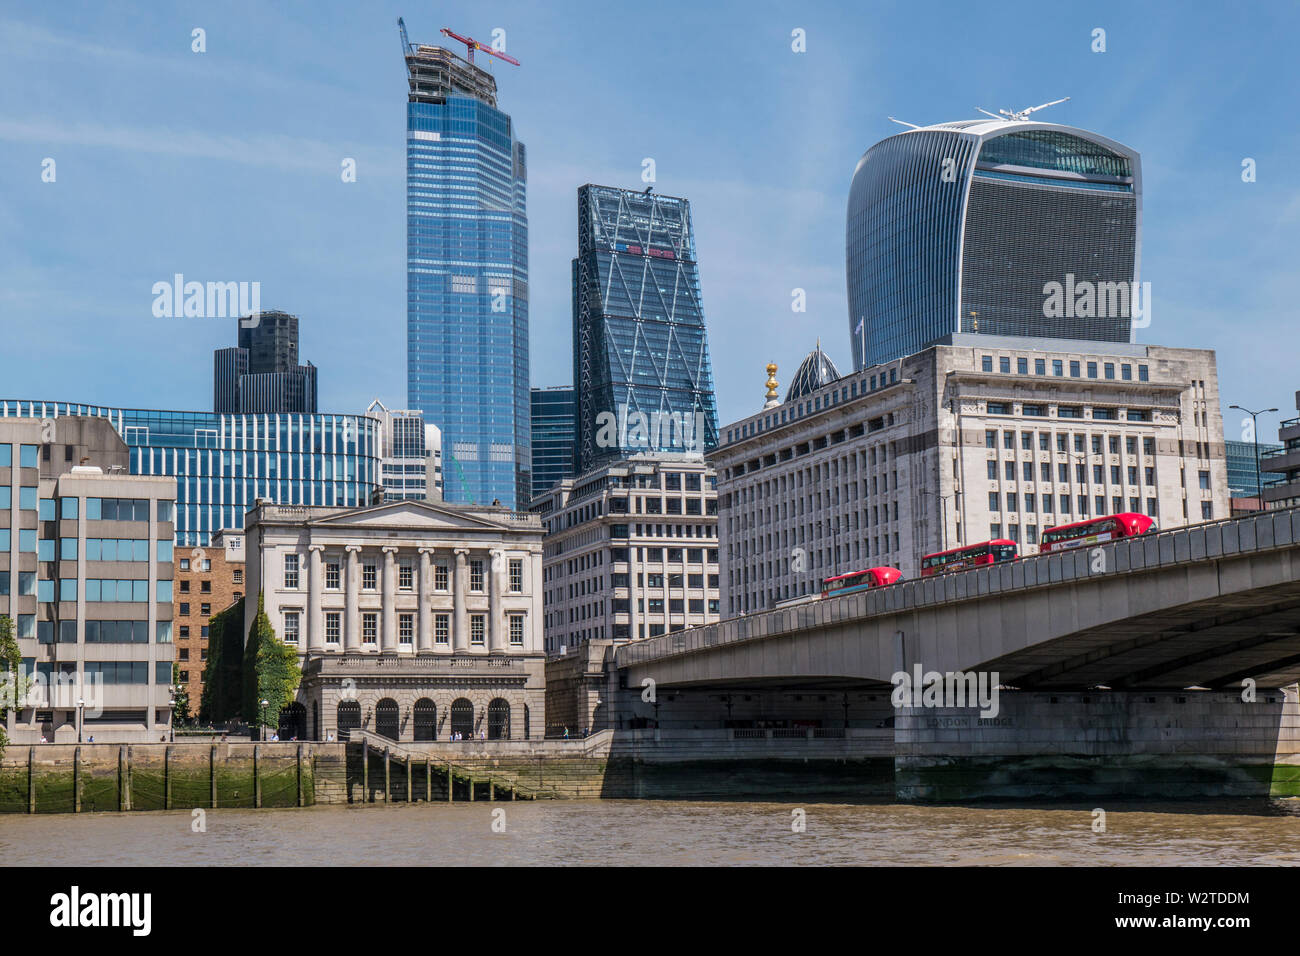 Le Pont de Londres avec Red bus menant à la ville de Londres les bâtiments financiers architecture ancienne et nouvelle. Gratte-ciel Skyline et la construction d'immeubles de bureaux dans la ville de Londres. Vue sur la ville d'immeubles de grande hauteur vue à partir de la Tamise Londres Banque D'Images